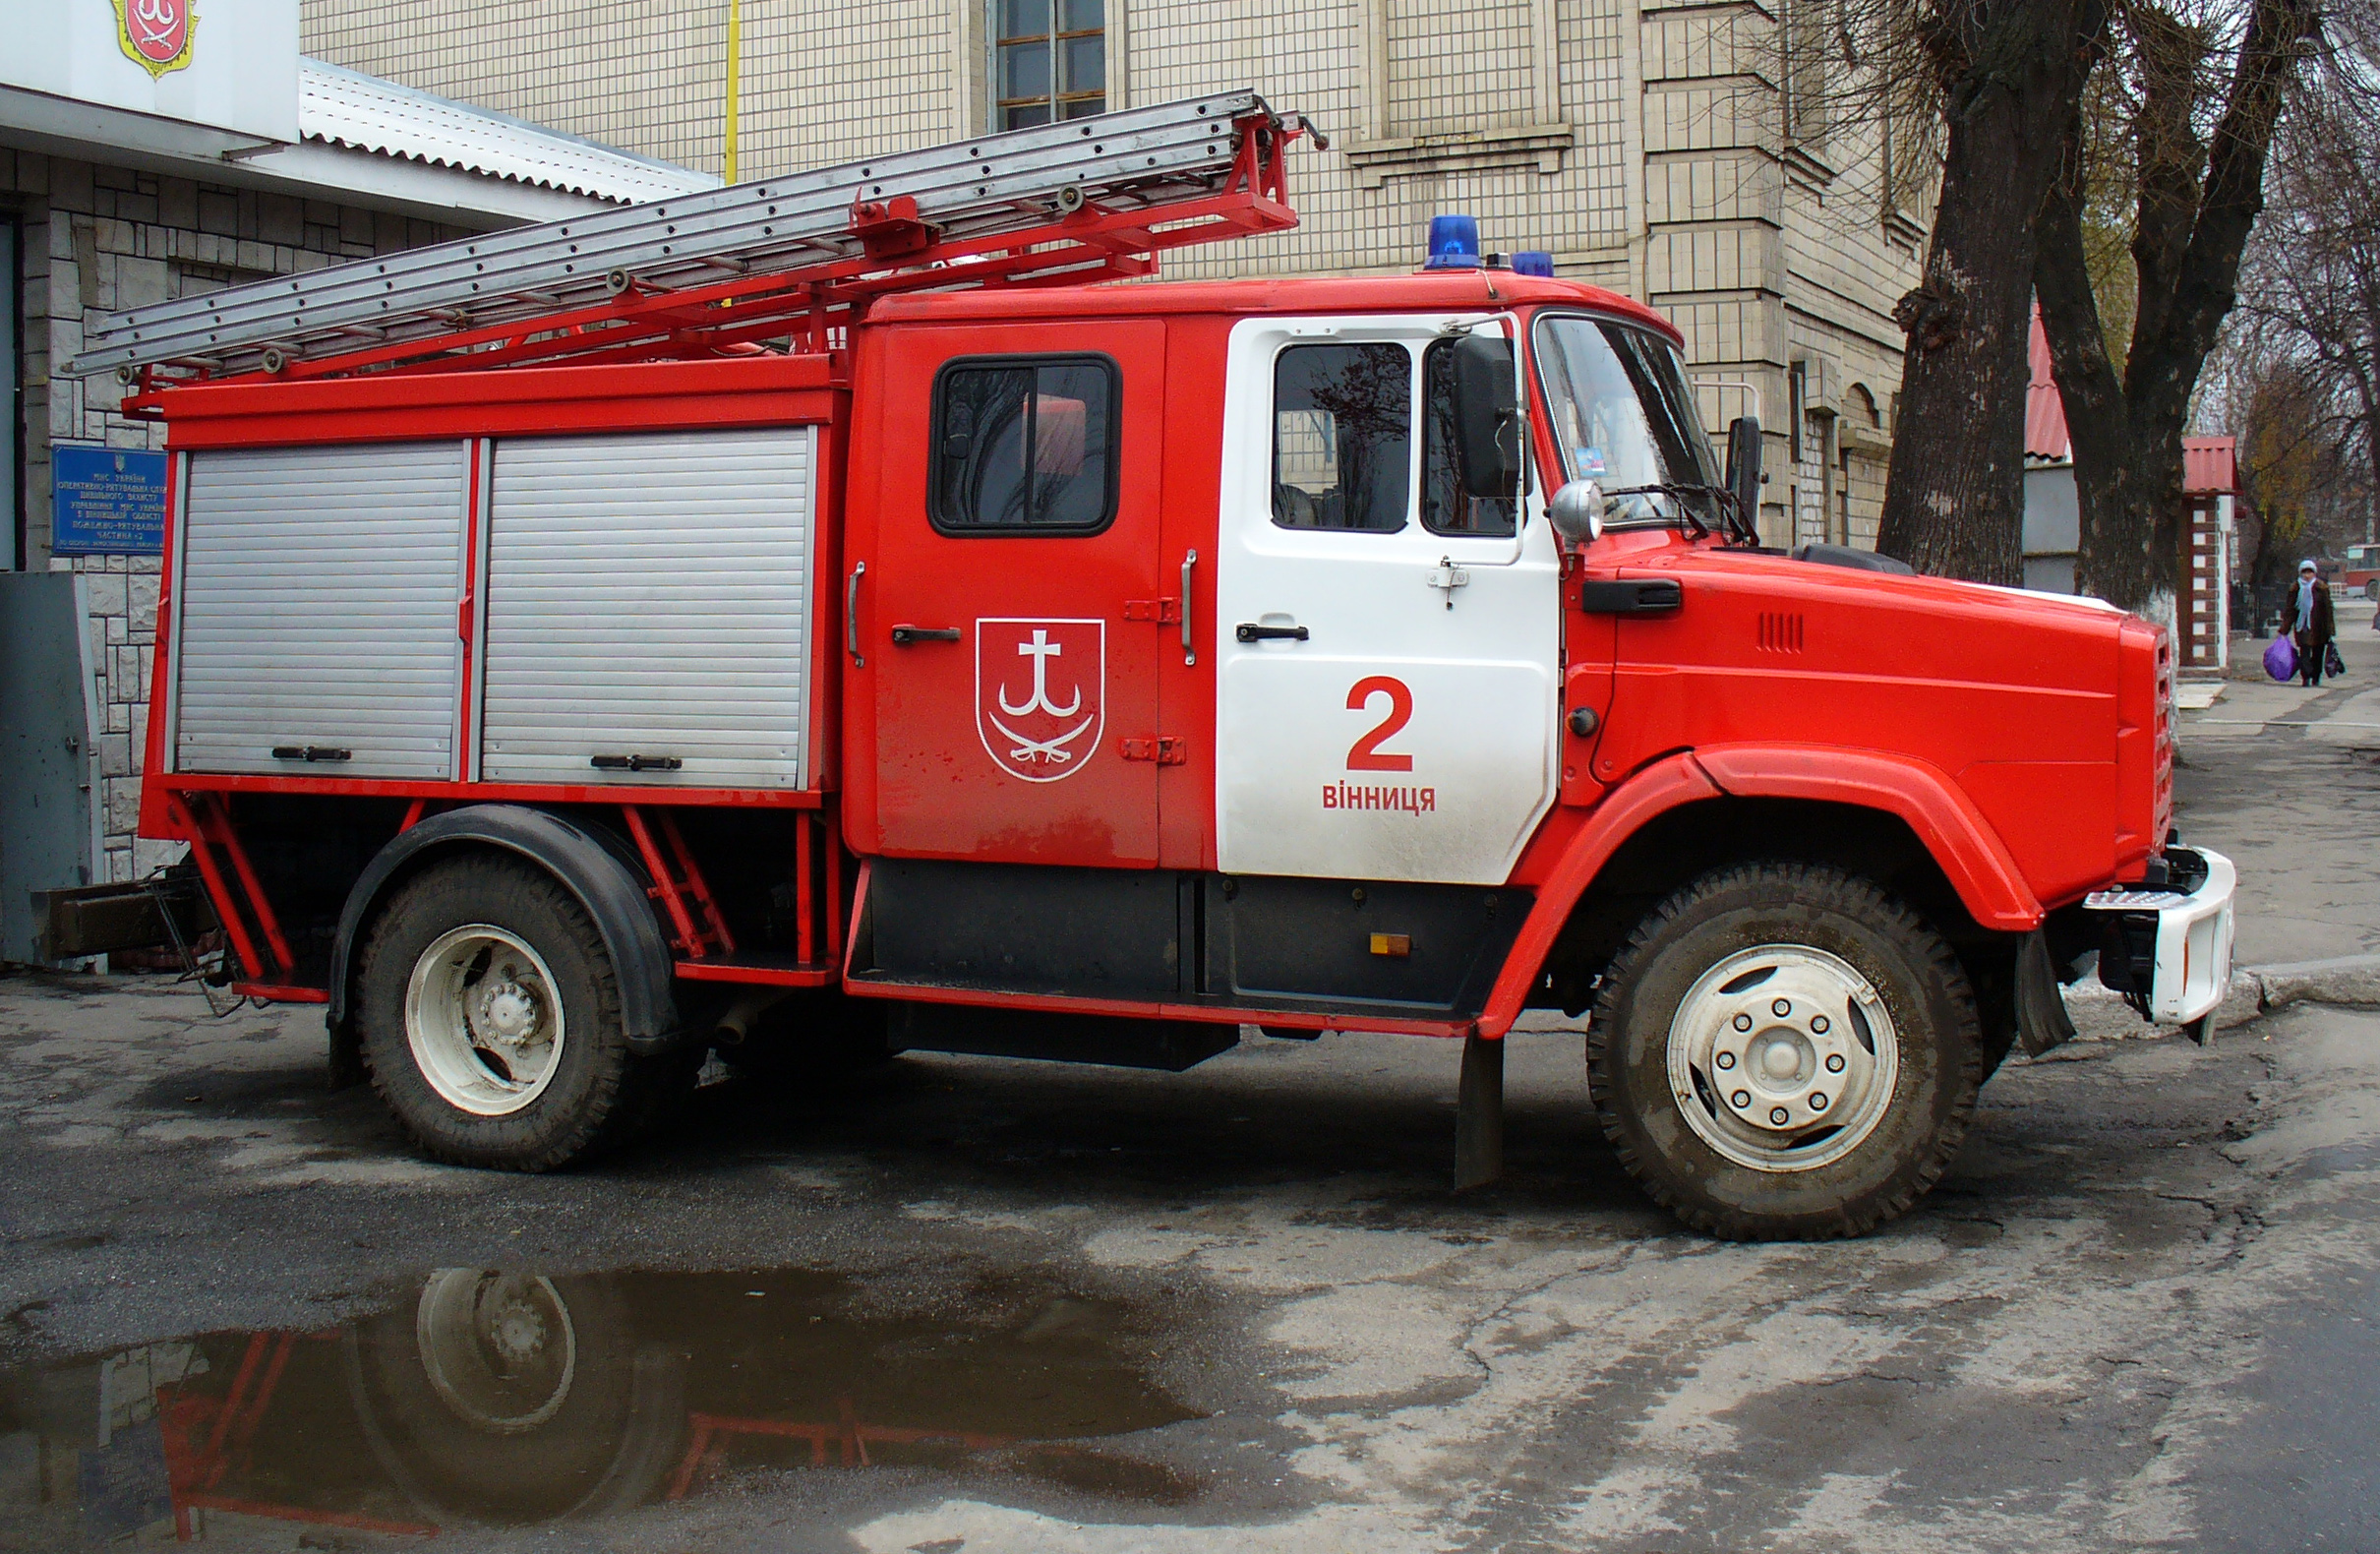 Fire engine ZiL AC 2009 G1